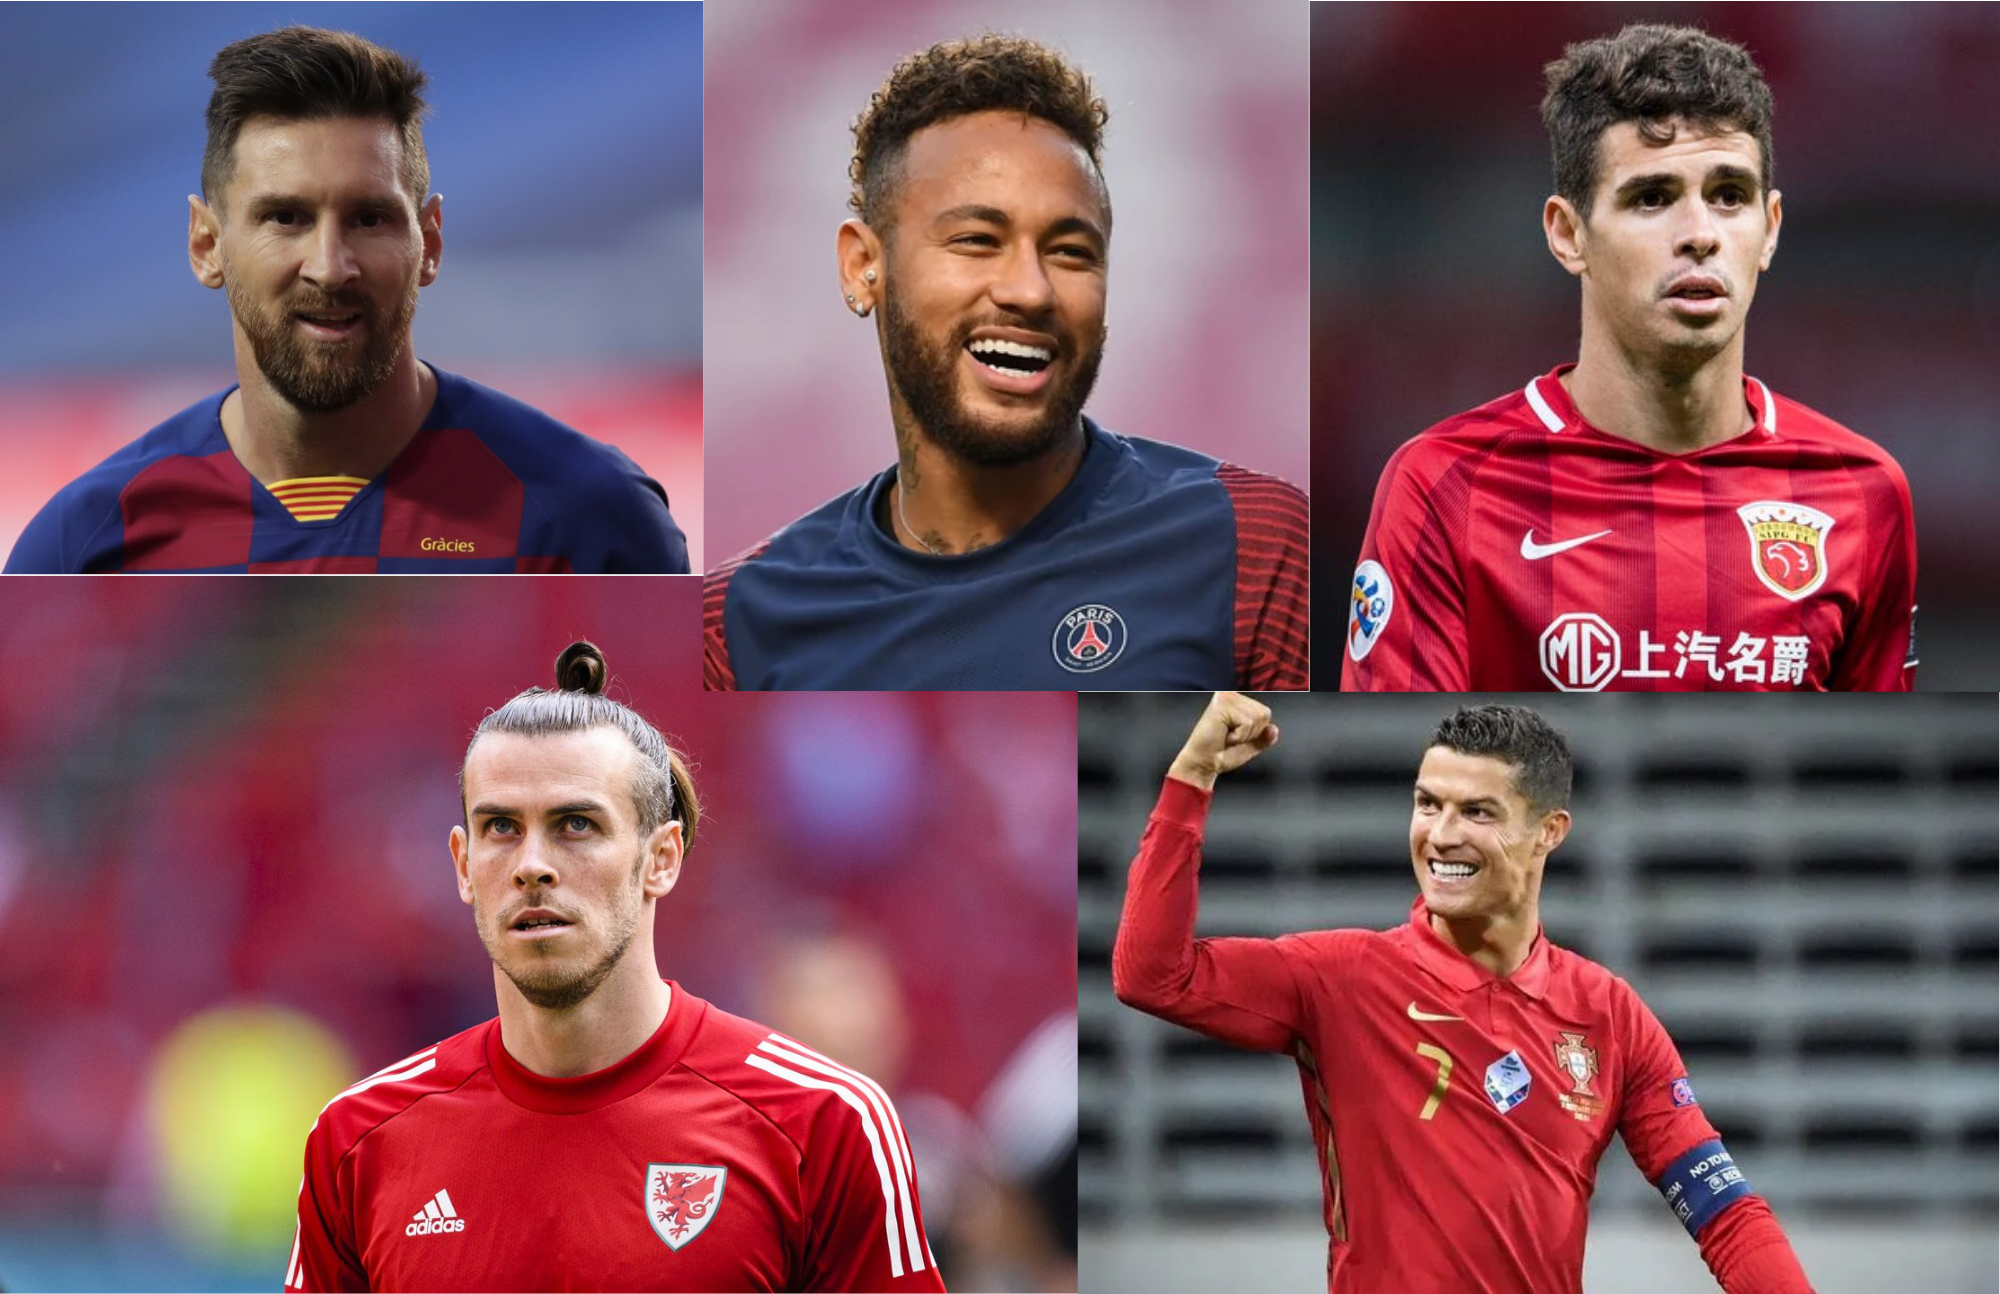  Los 5 futbolistas más conocidos del mundo